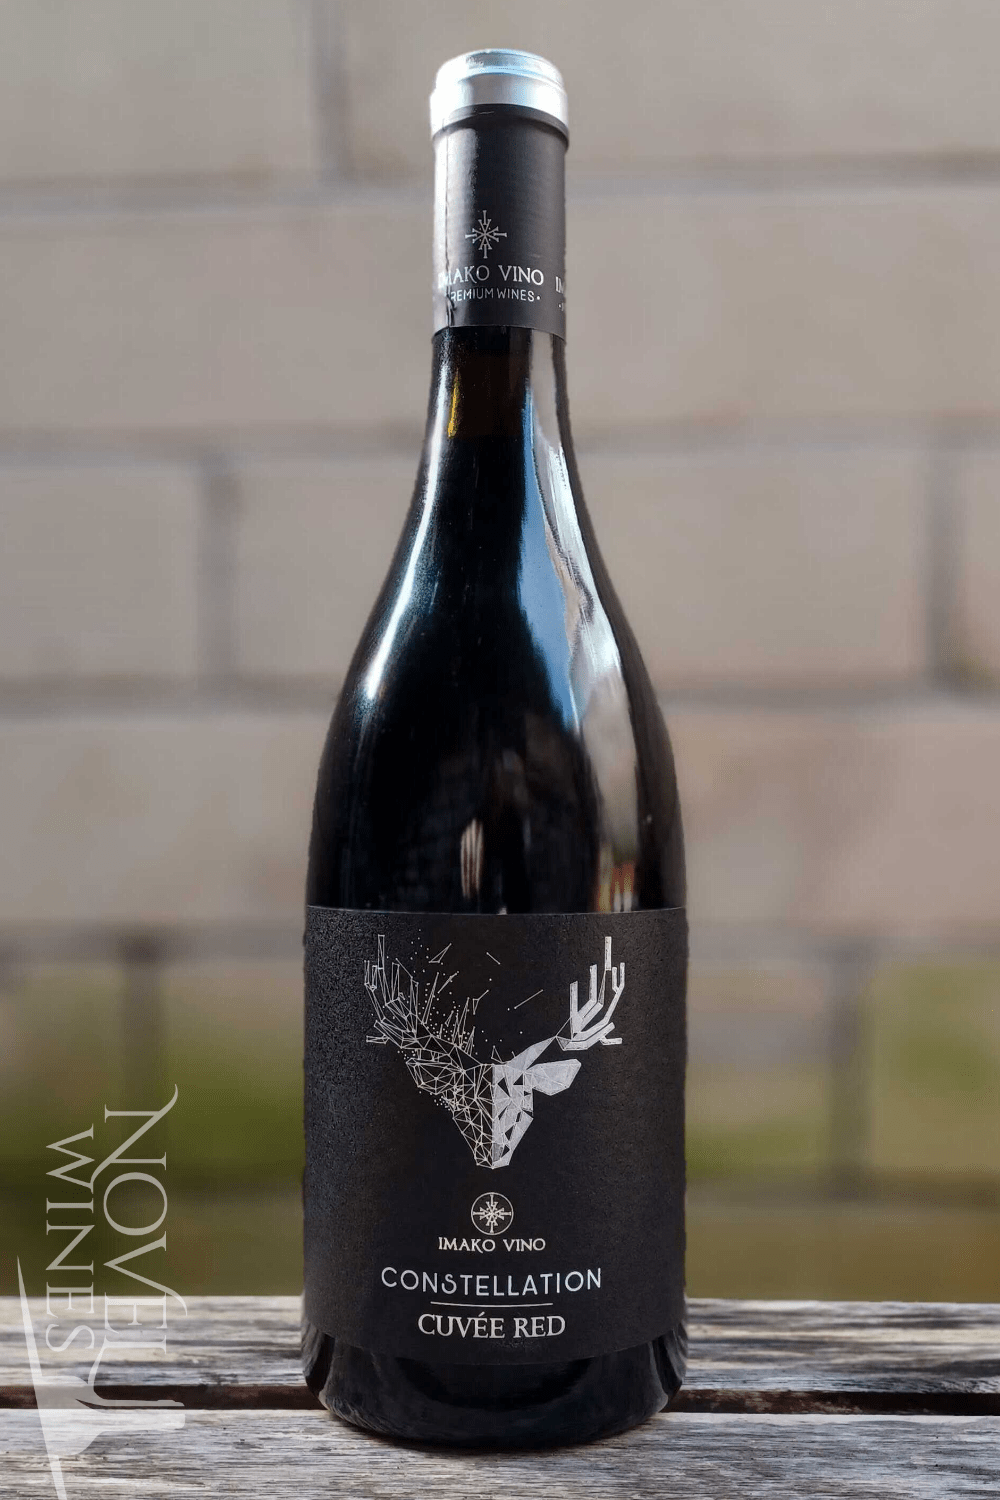 Imako Vino Red Wine Imako Vino Constellation Red Cuvée 2021, Republic of North Macedonia